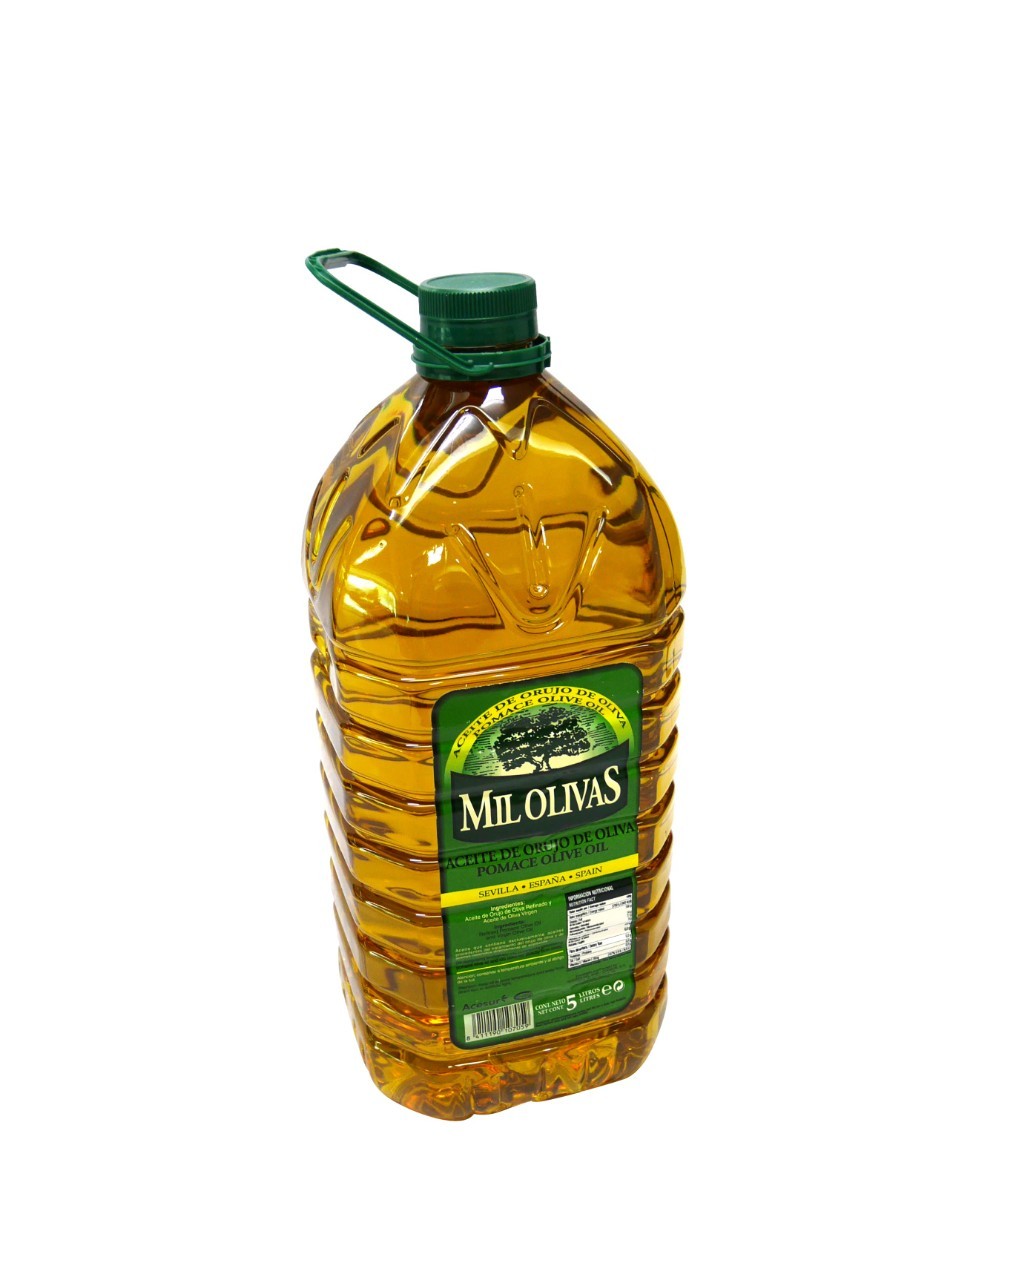 5L./ขวด/BOTTLE น้ำมันมะกอกโพมาซ 5 ลิตร (น้ำมันมะกอกสำหรับผัด/ทอด) “MIL OLIVAS” BRAND POMACE OLIVE OIL